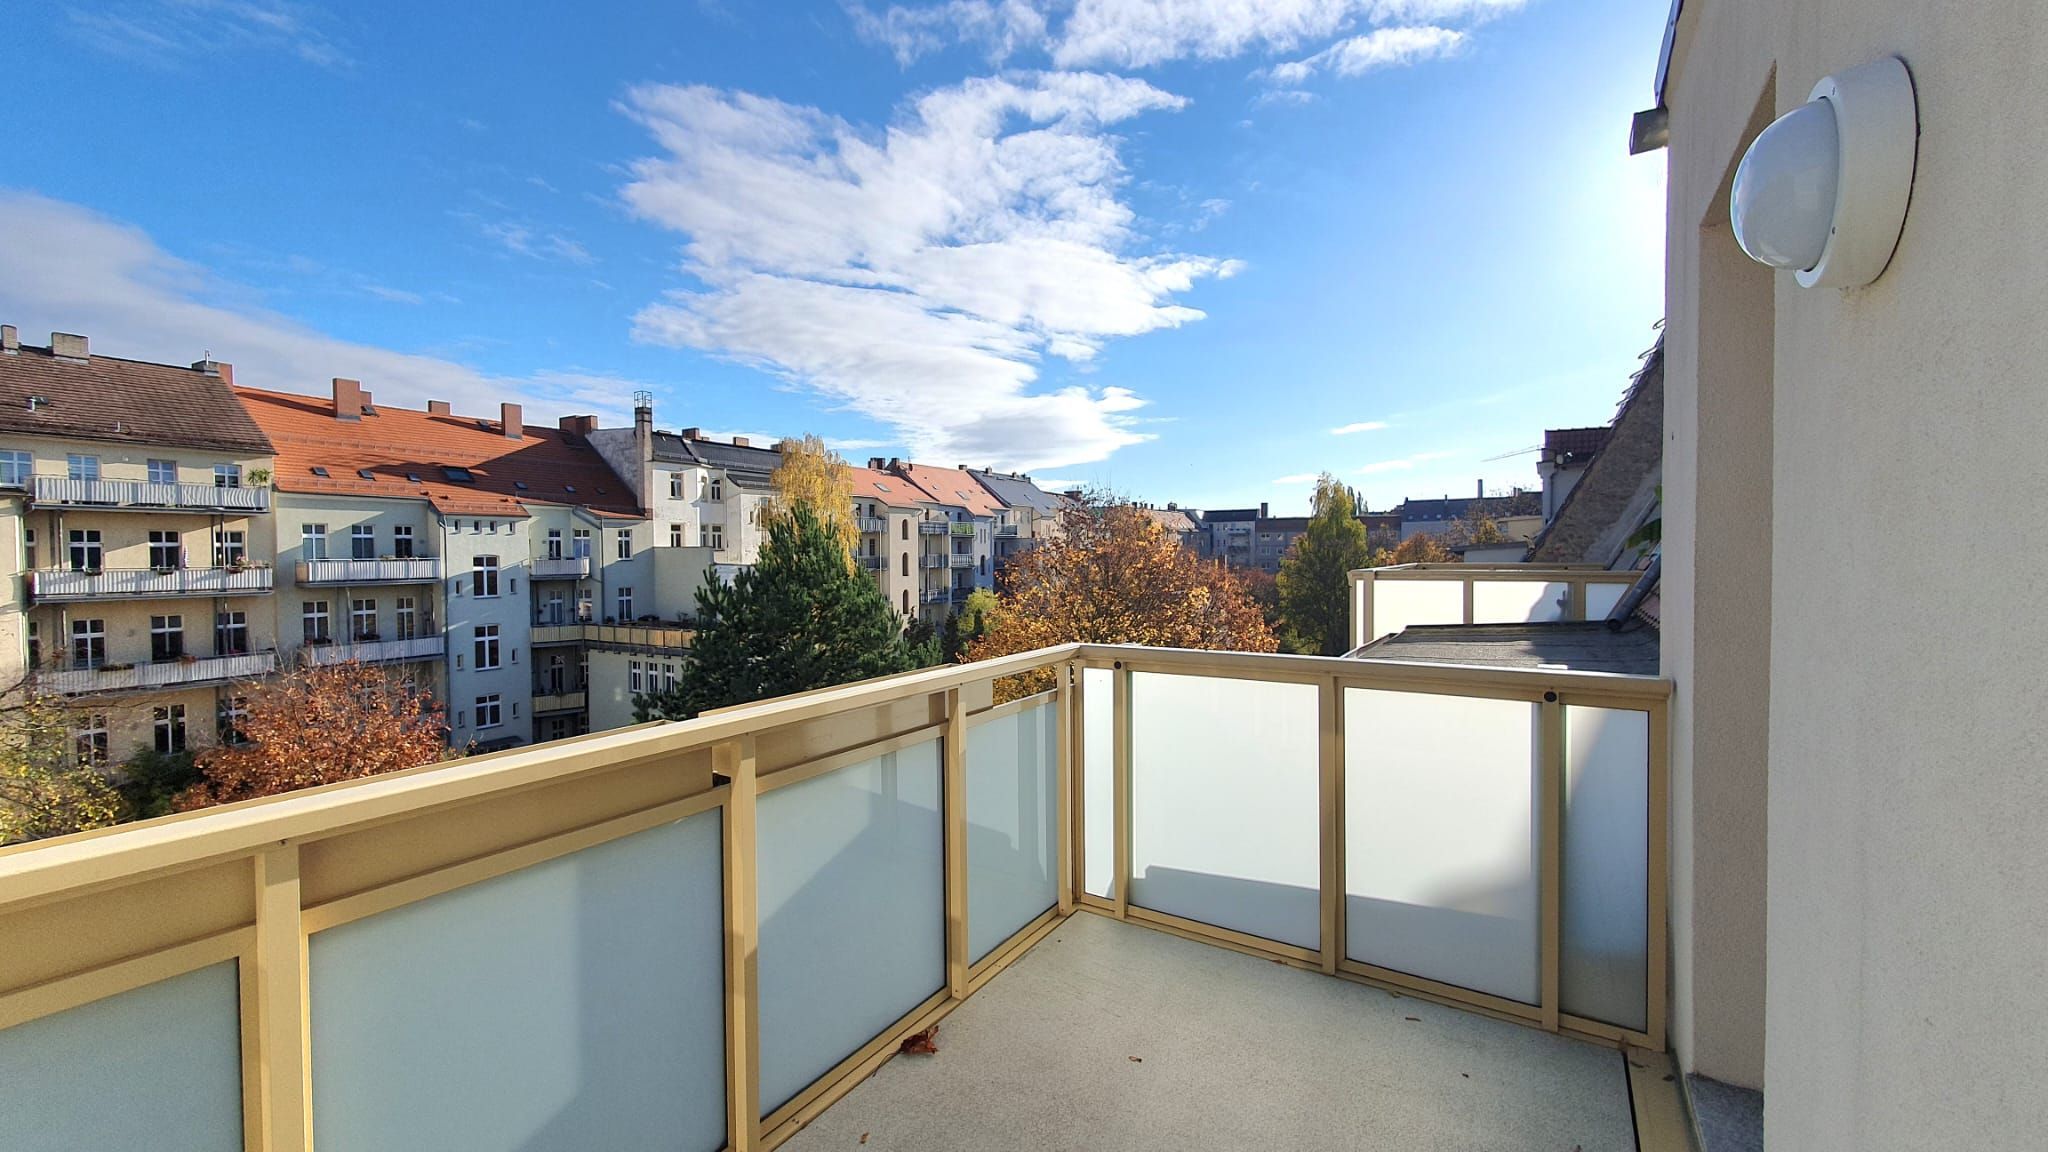 zentrale 3- Raumwohnung mit Einbauküche und Balkon im Dachgeschoss ! 02826 Görlitz, Dachgeschosswohnung